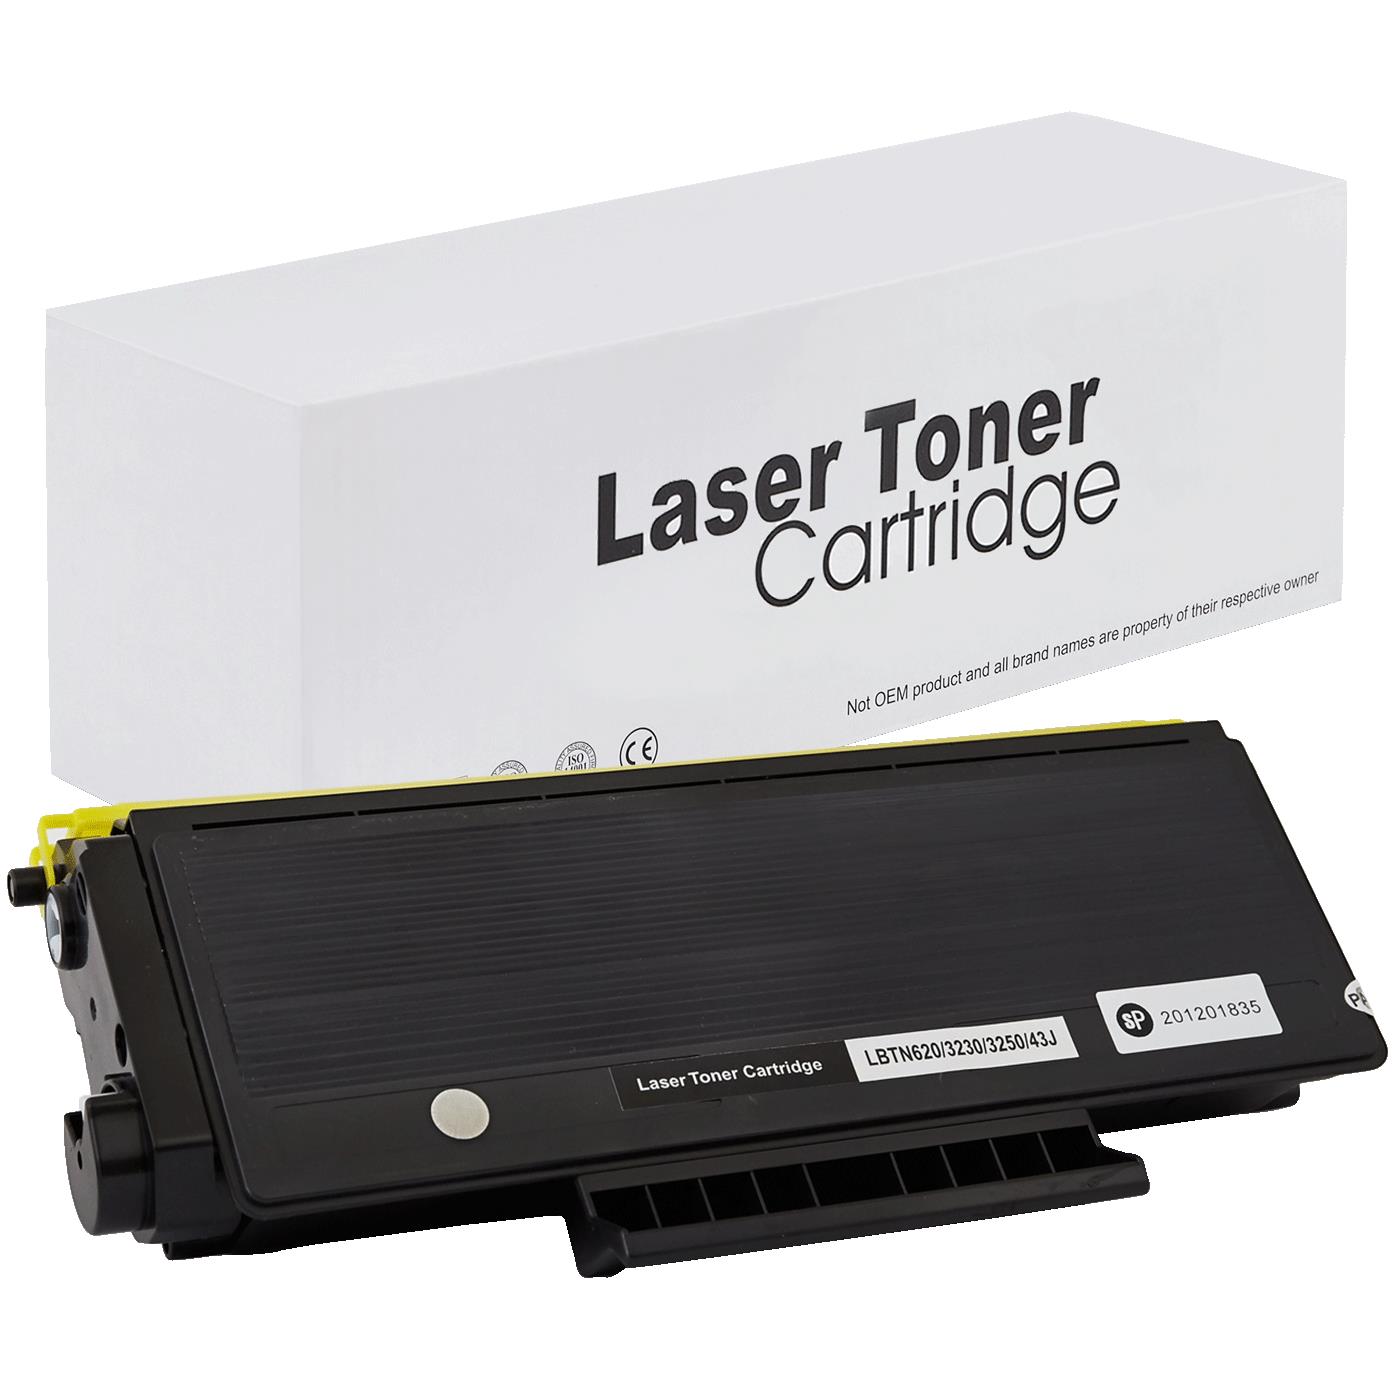 съвместима тонер касета за принтери и печатащи устройства на Brother HL 5350 DN Toner BR-3230 | TN3230. Ниски цени, прецизно изпълнение, високо качество.